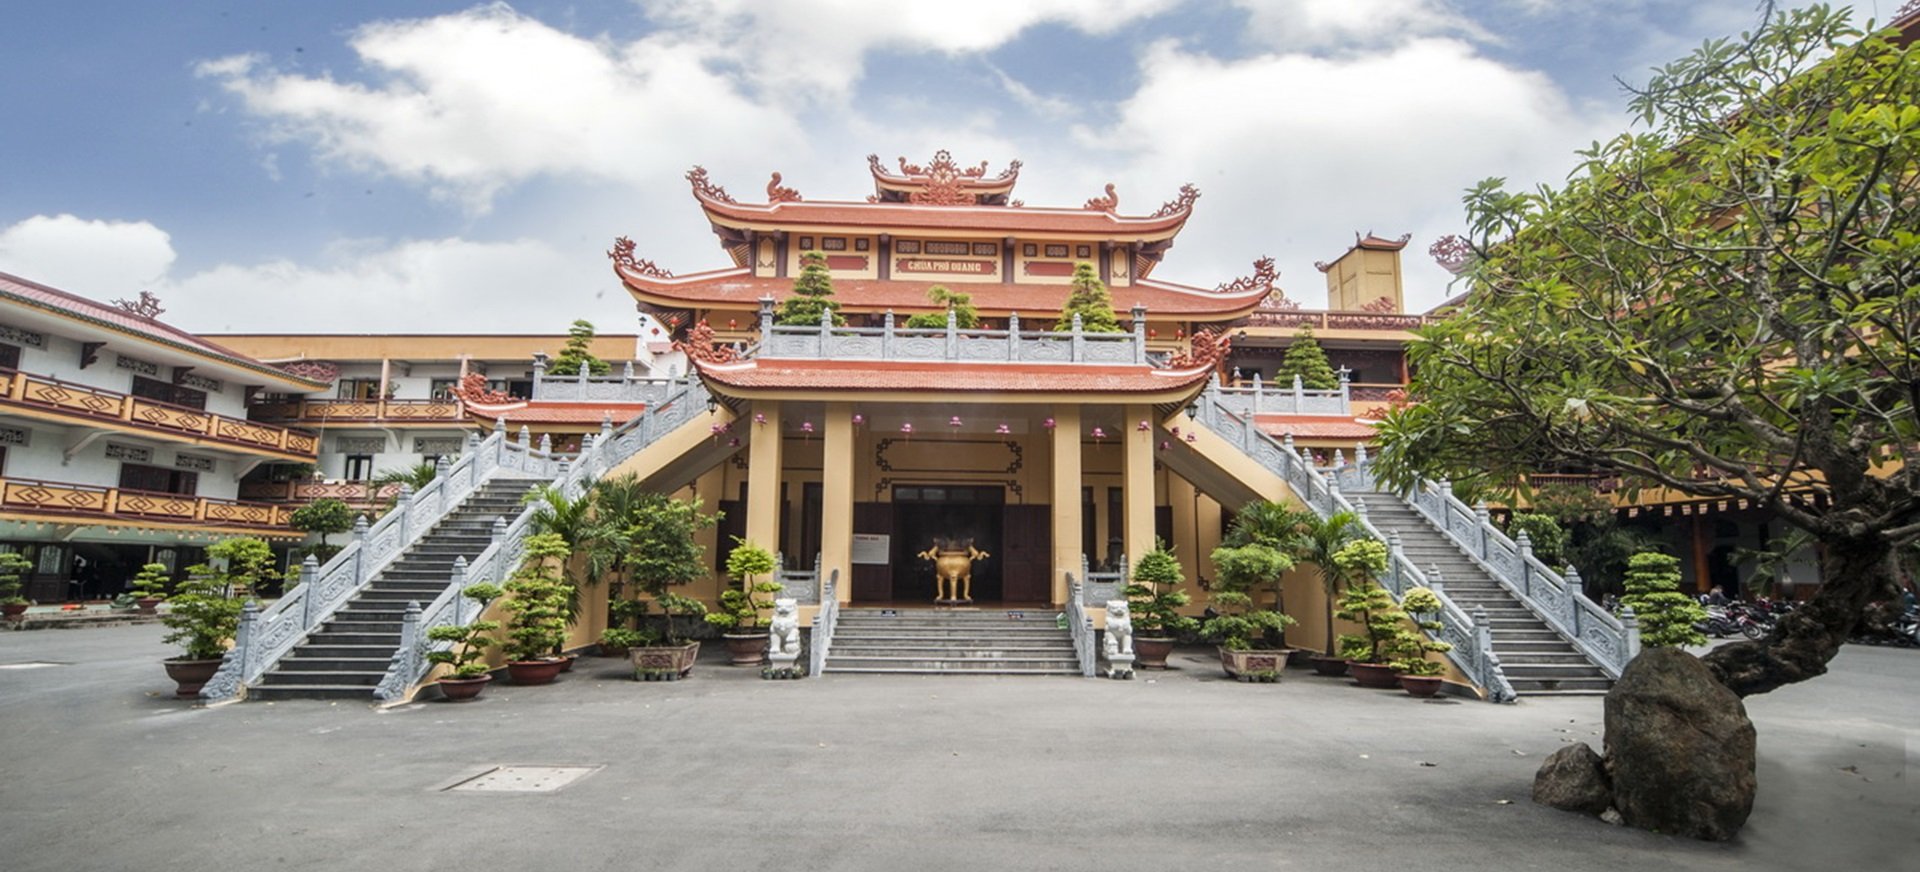 Top 6 ngôi chùa đẹp, linh thiêng nhất ở quận Gò Vấp - Top10tphcm